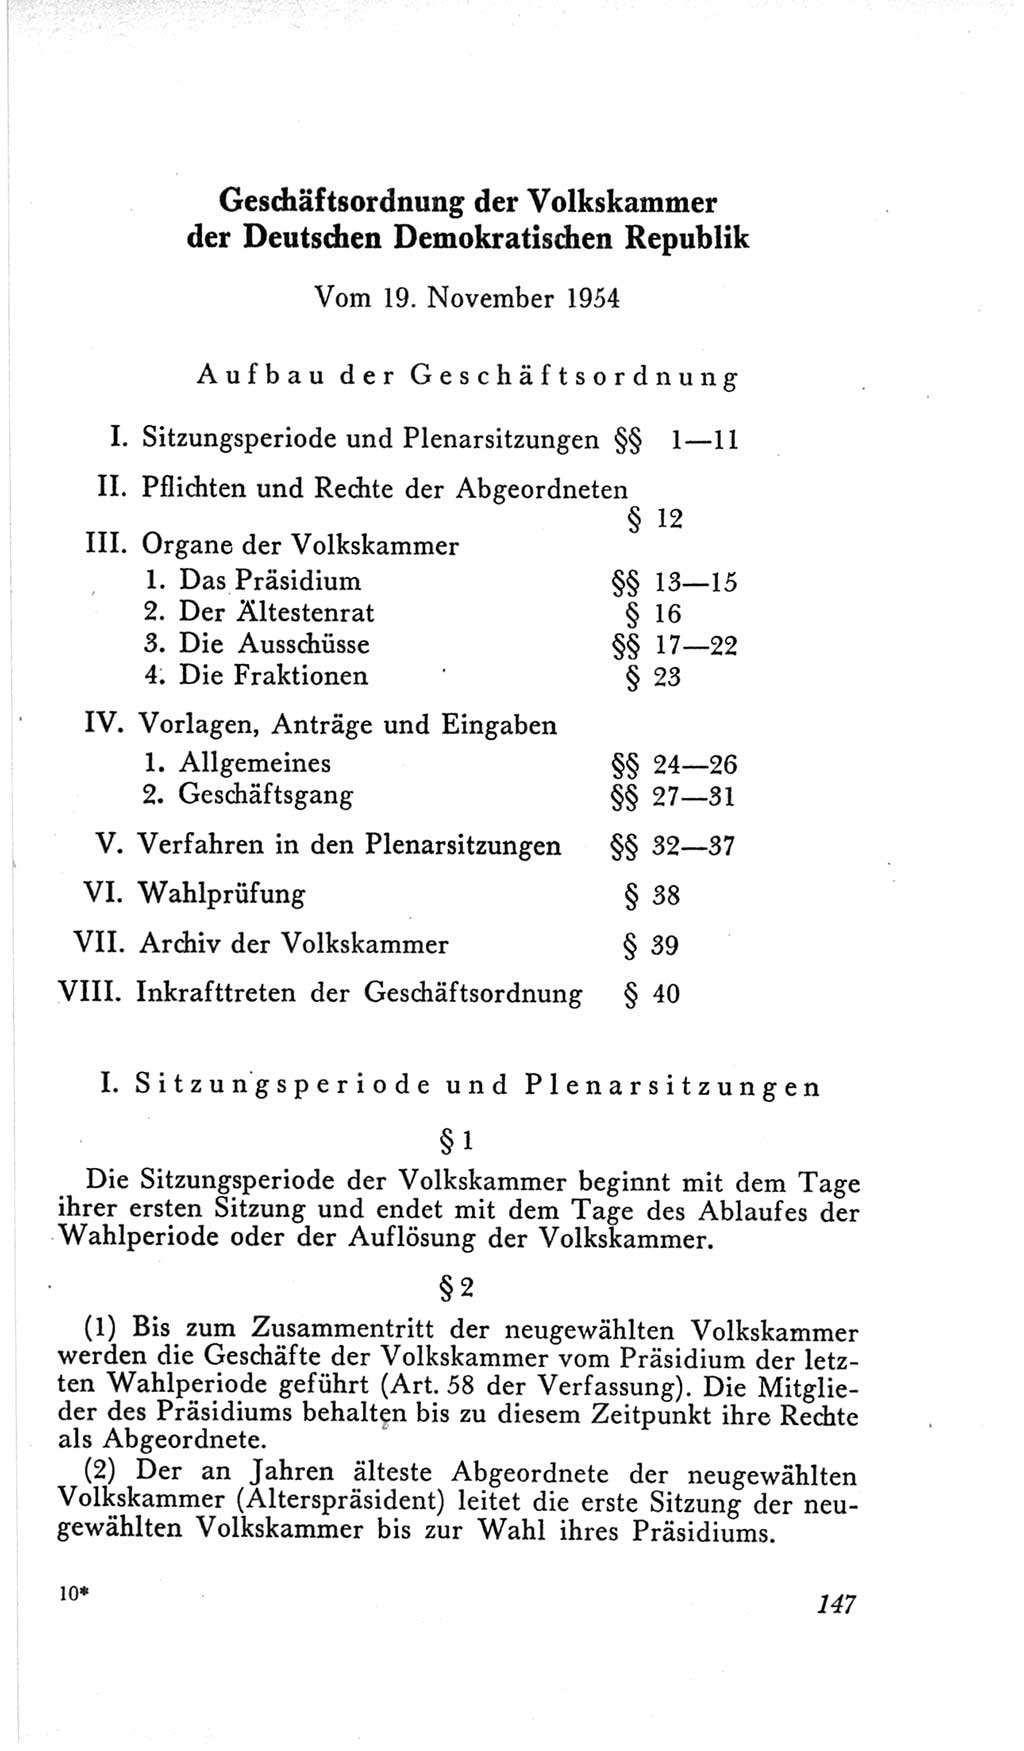 Handbuch der Volkskammer (VK) der Deutschen Demokratischen Republik (DDR), 2. Wahlperiode 1954-1958, Seite 147 (Hdb. VK. DDR, 2. WP. 1954-1958, S. 147)